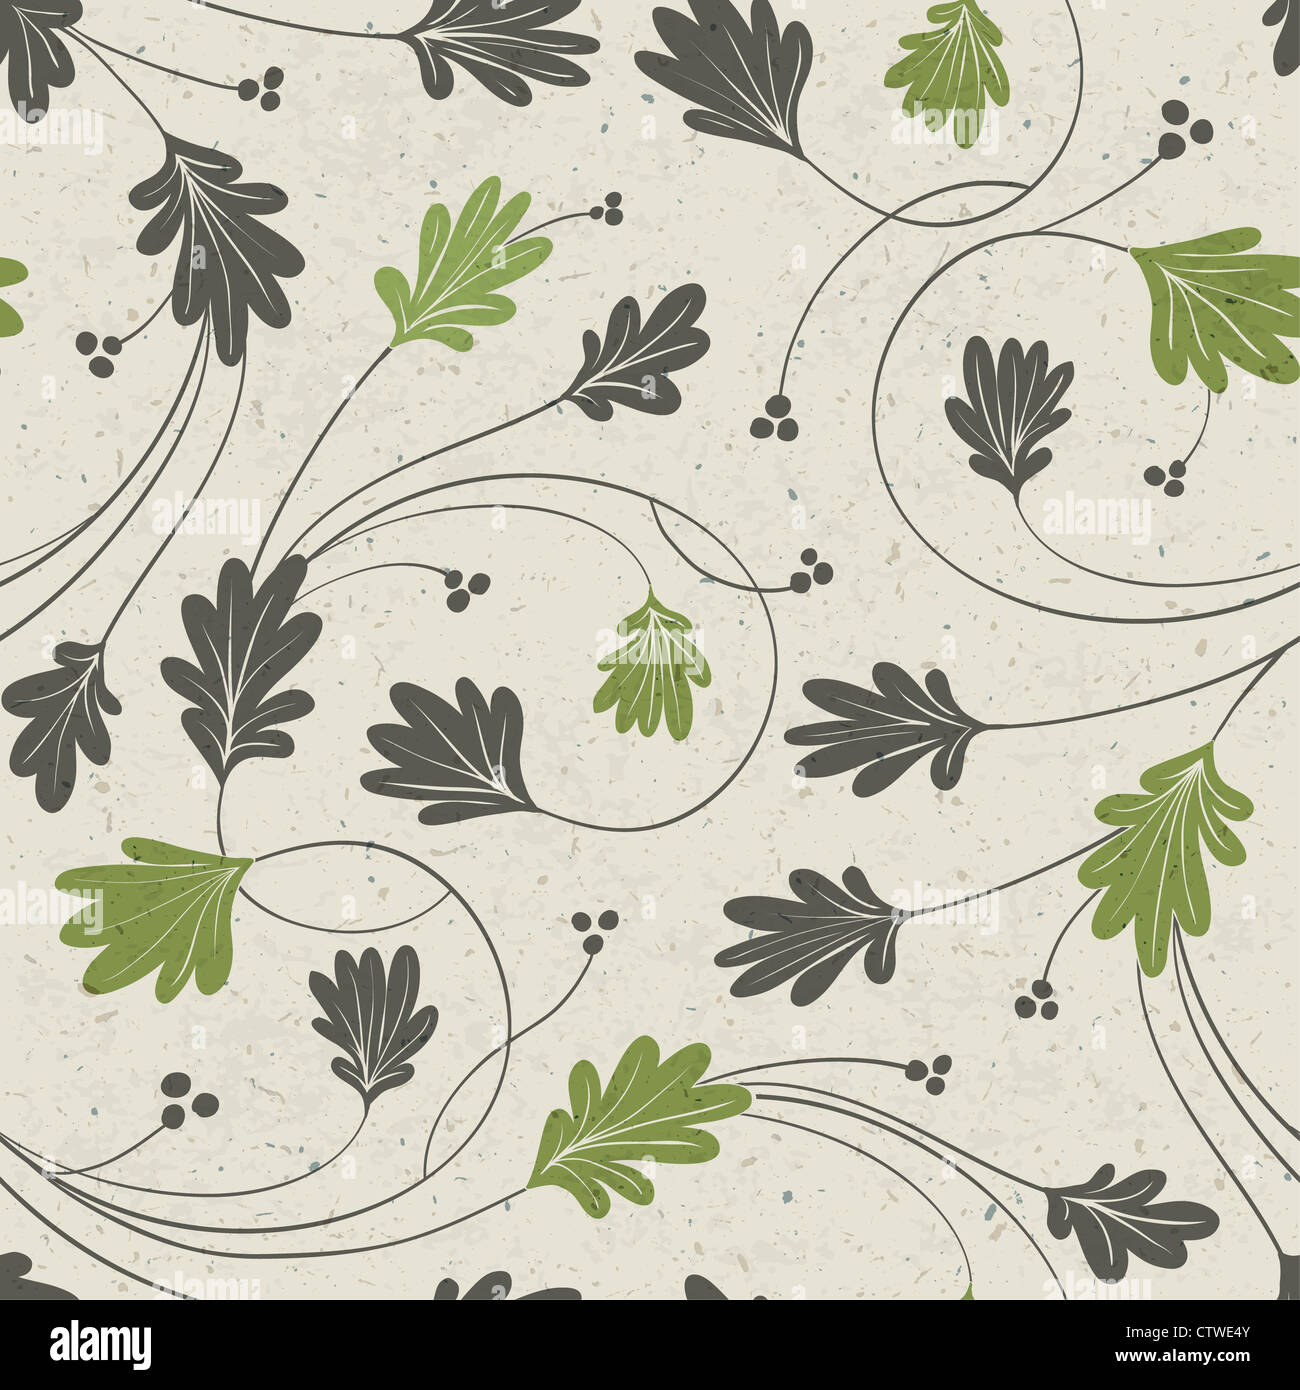 Oak leaves stylized seamless pattern Stock Photo